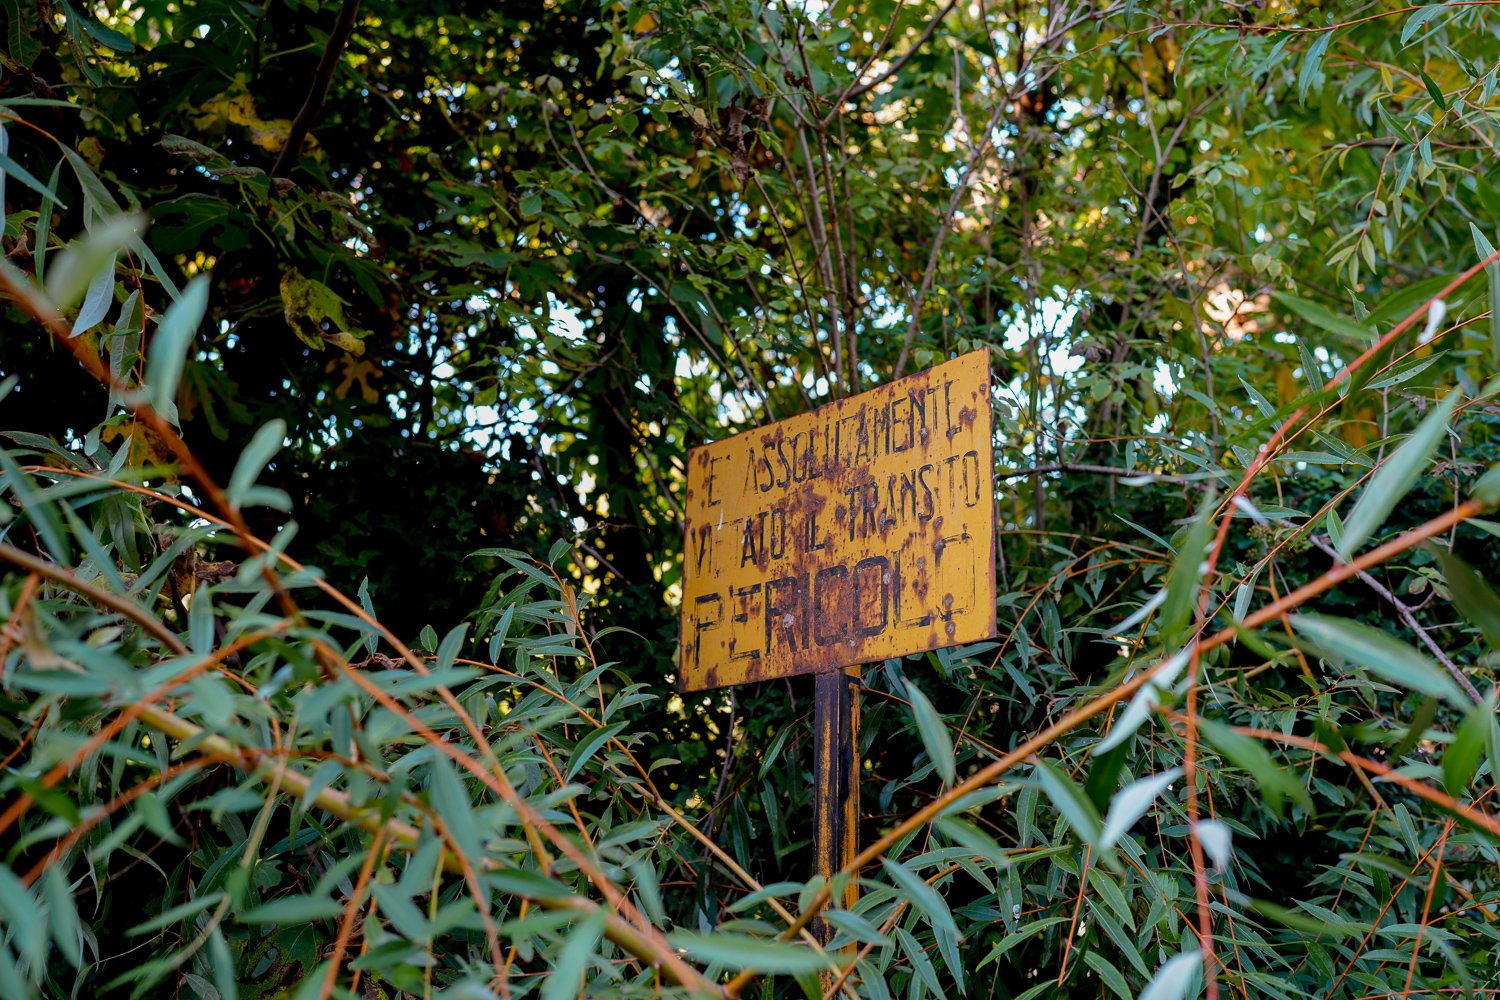  Vecchio cartello di pericolo nell’area sottostante l’ex stabilimento, considerata pericolosamente contaminata.Papigno (Terni), 2022 